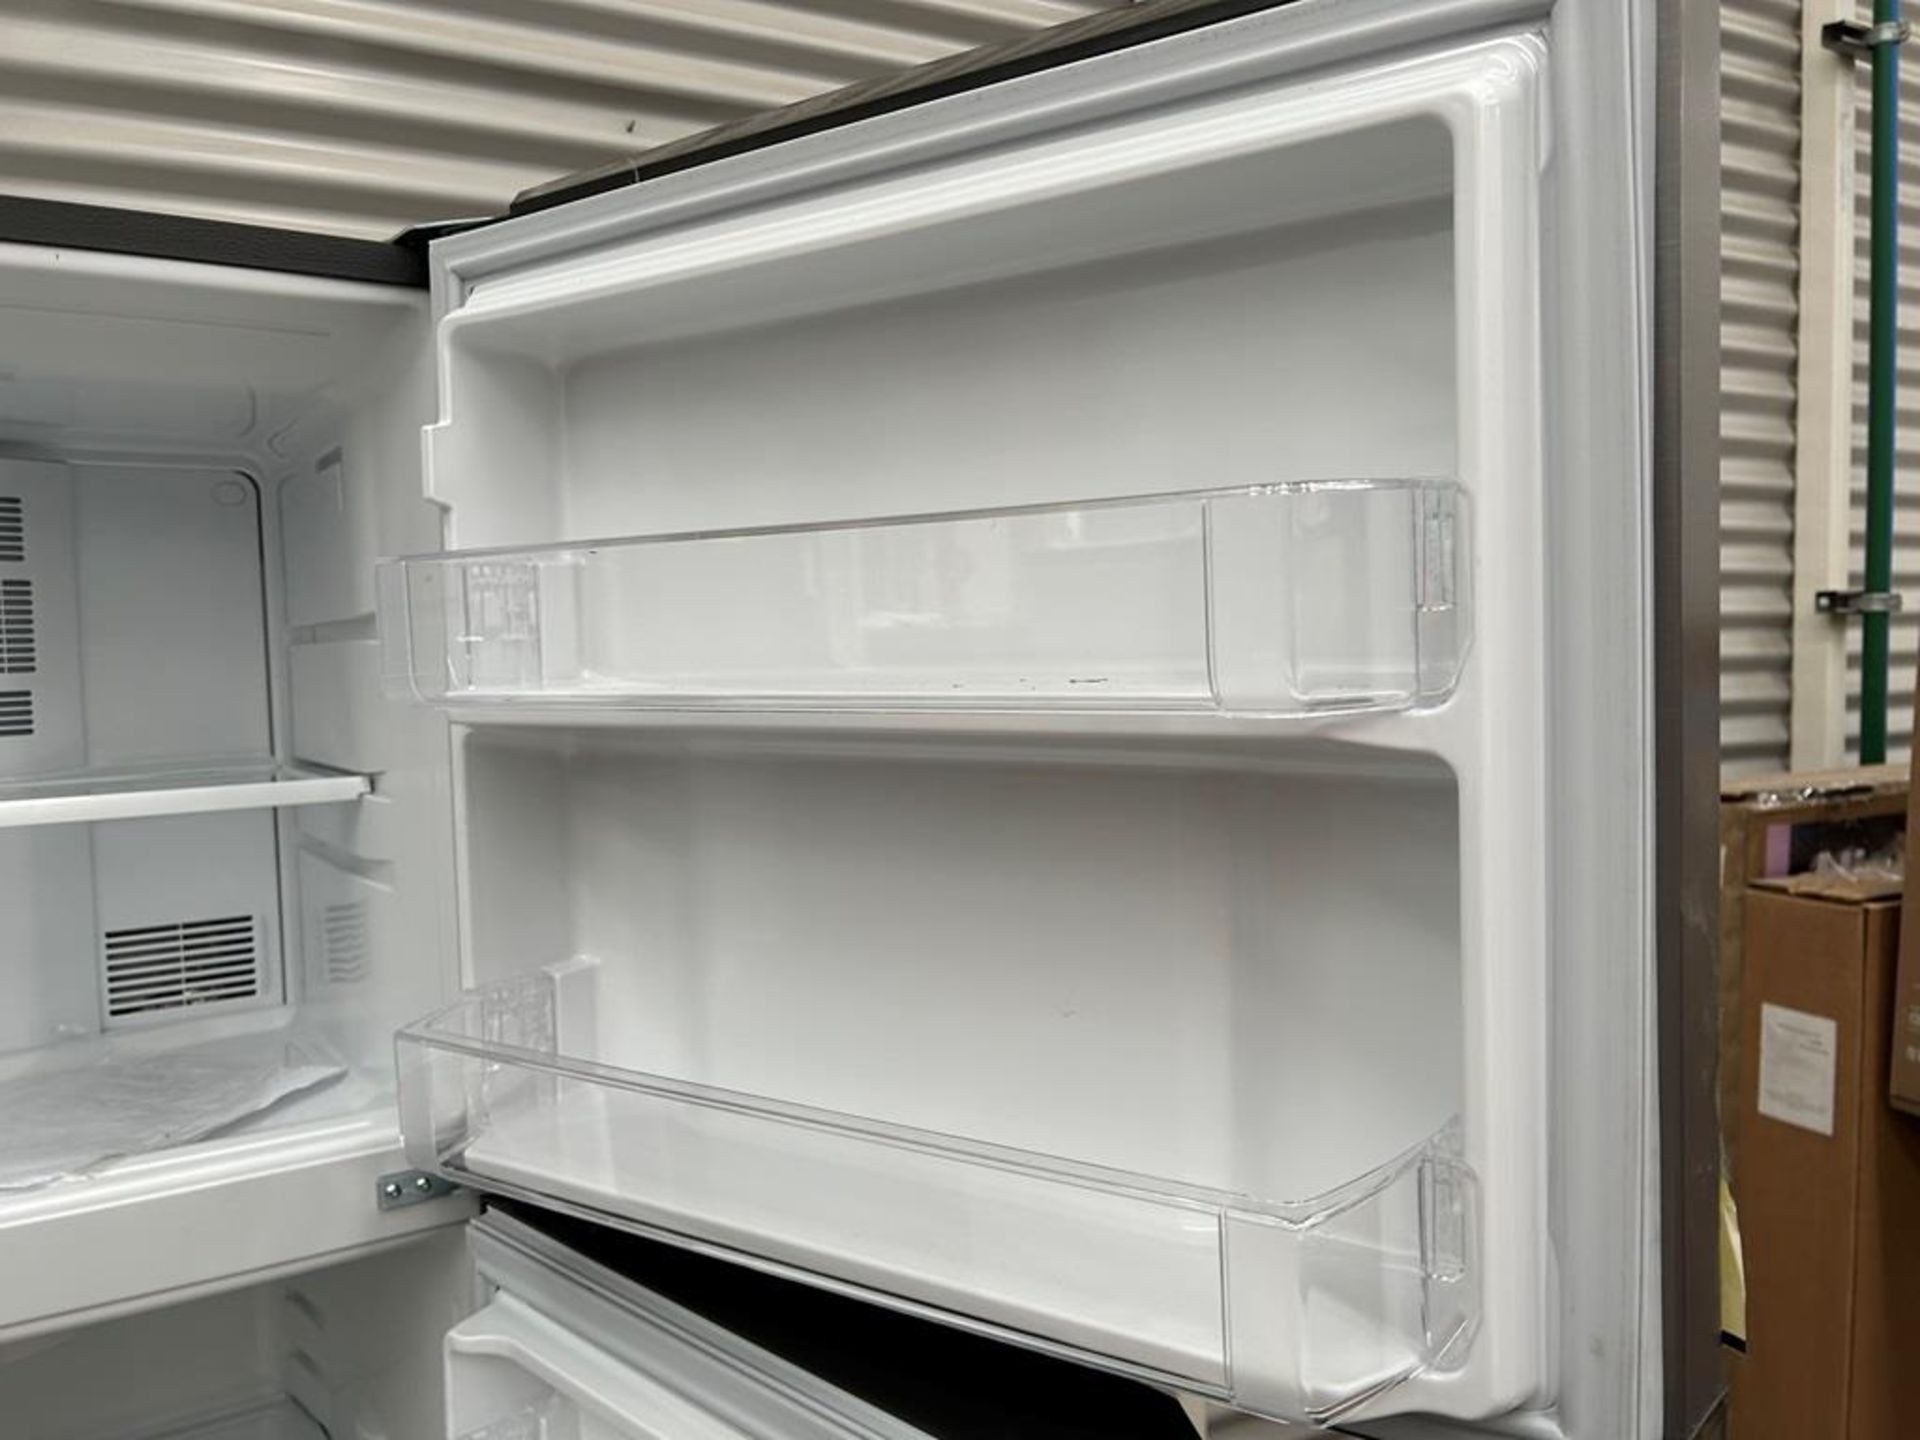 Lote de 2 refrigeradores contiene: 1 Refrigerador Marca MABE, Modelo RME360PVMRM0, Serie 04453, Col - Image 13 of 16